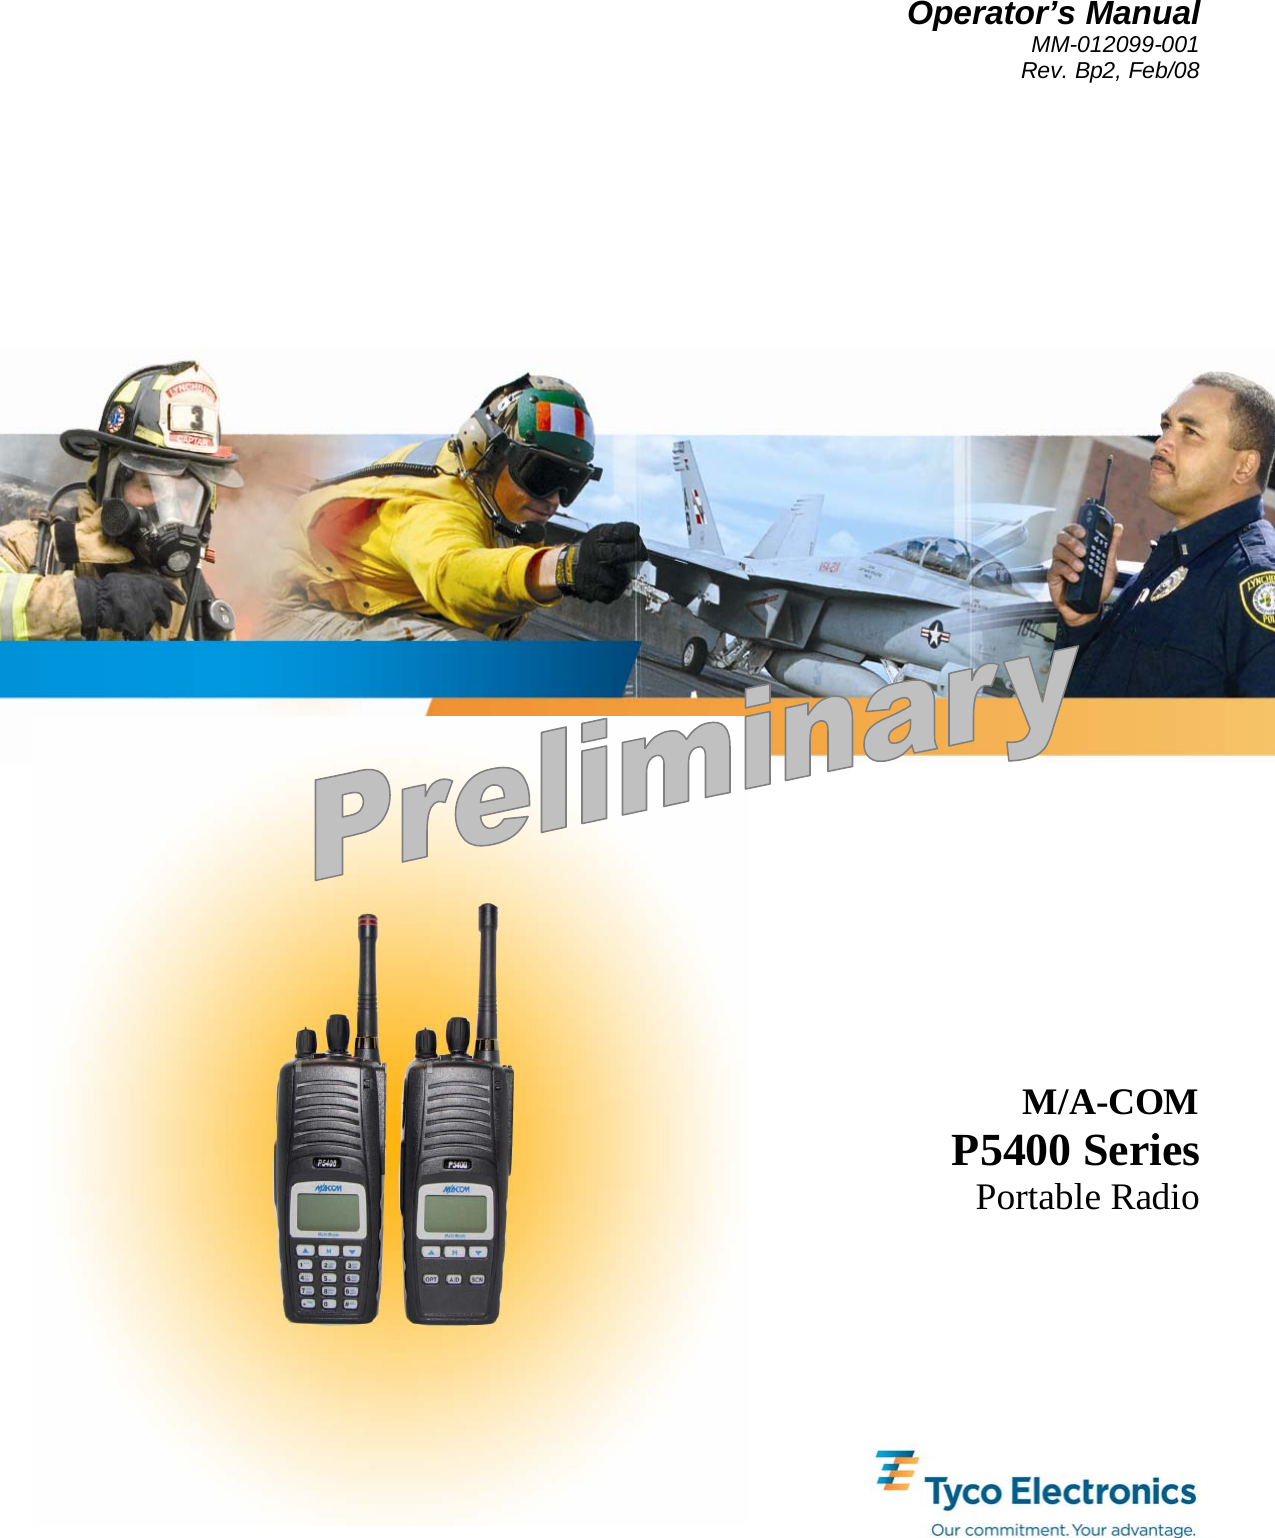 Operator’s Manual MM-012099-001 Rev. Bp2, Feb/08        M/A-COM P5400 Series Portable Radio 